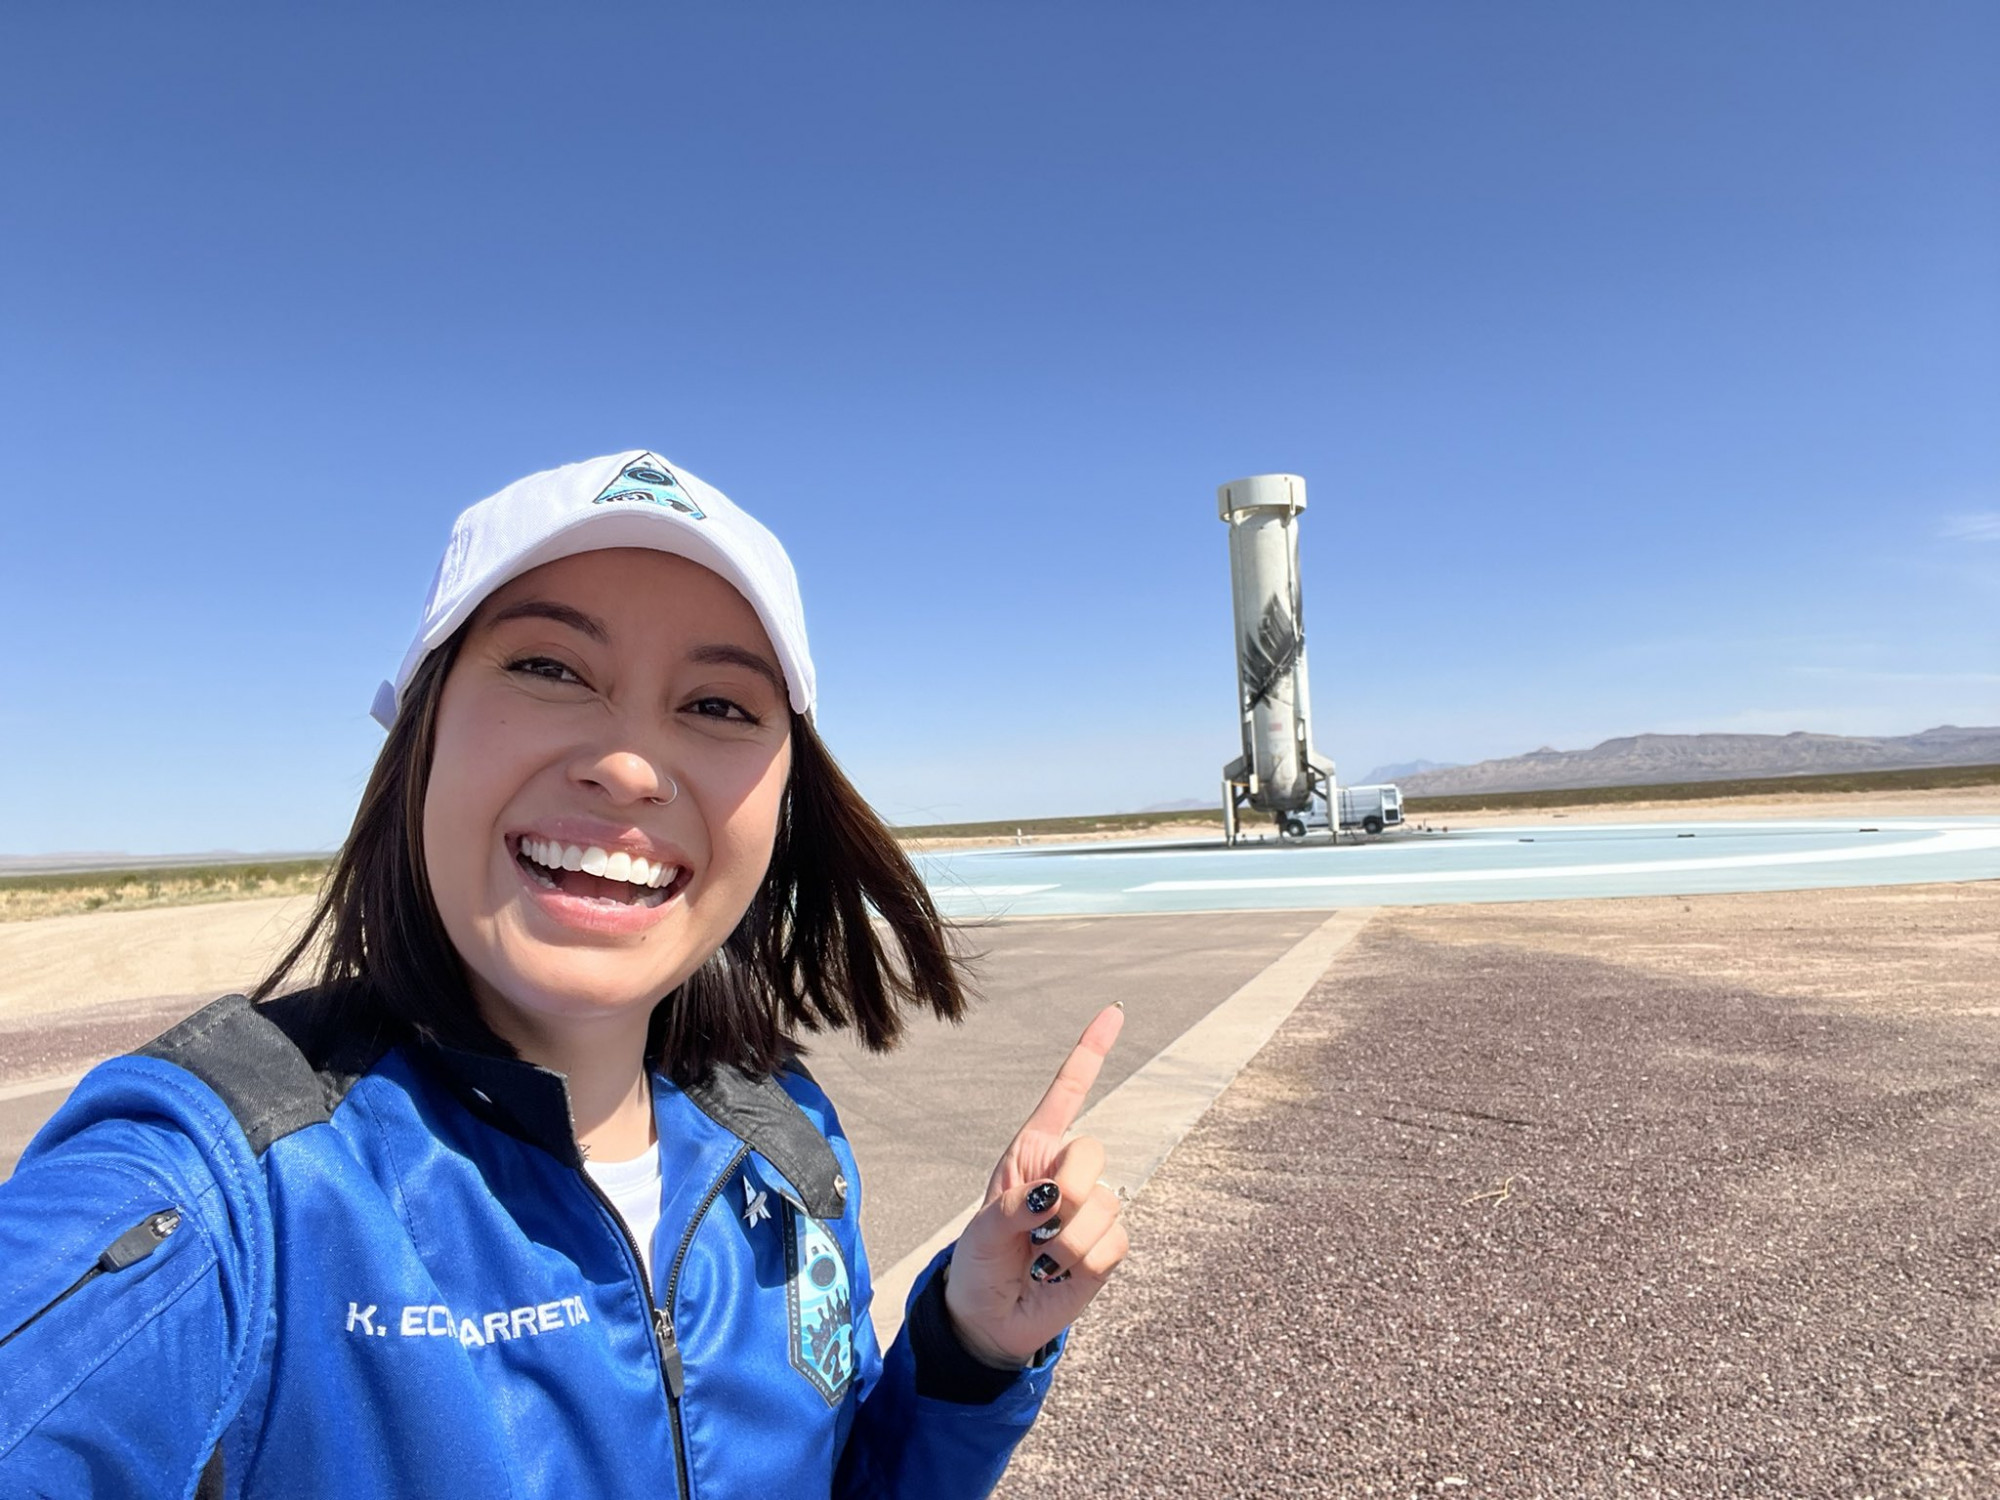 Katya Echazarreta trước thời khắc bay lên không gian cùng tàu vũ trụ New Shepard - Ảnh: Katya Echazarreta/Twitter